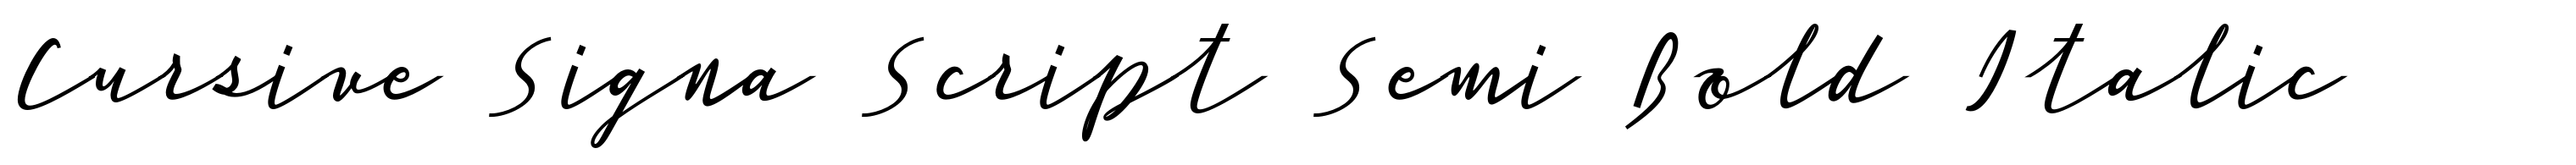 Cursive Signa Script Semi Bold Italic